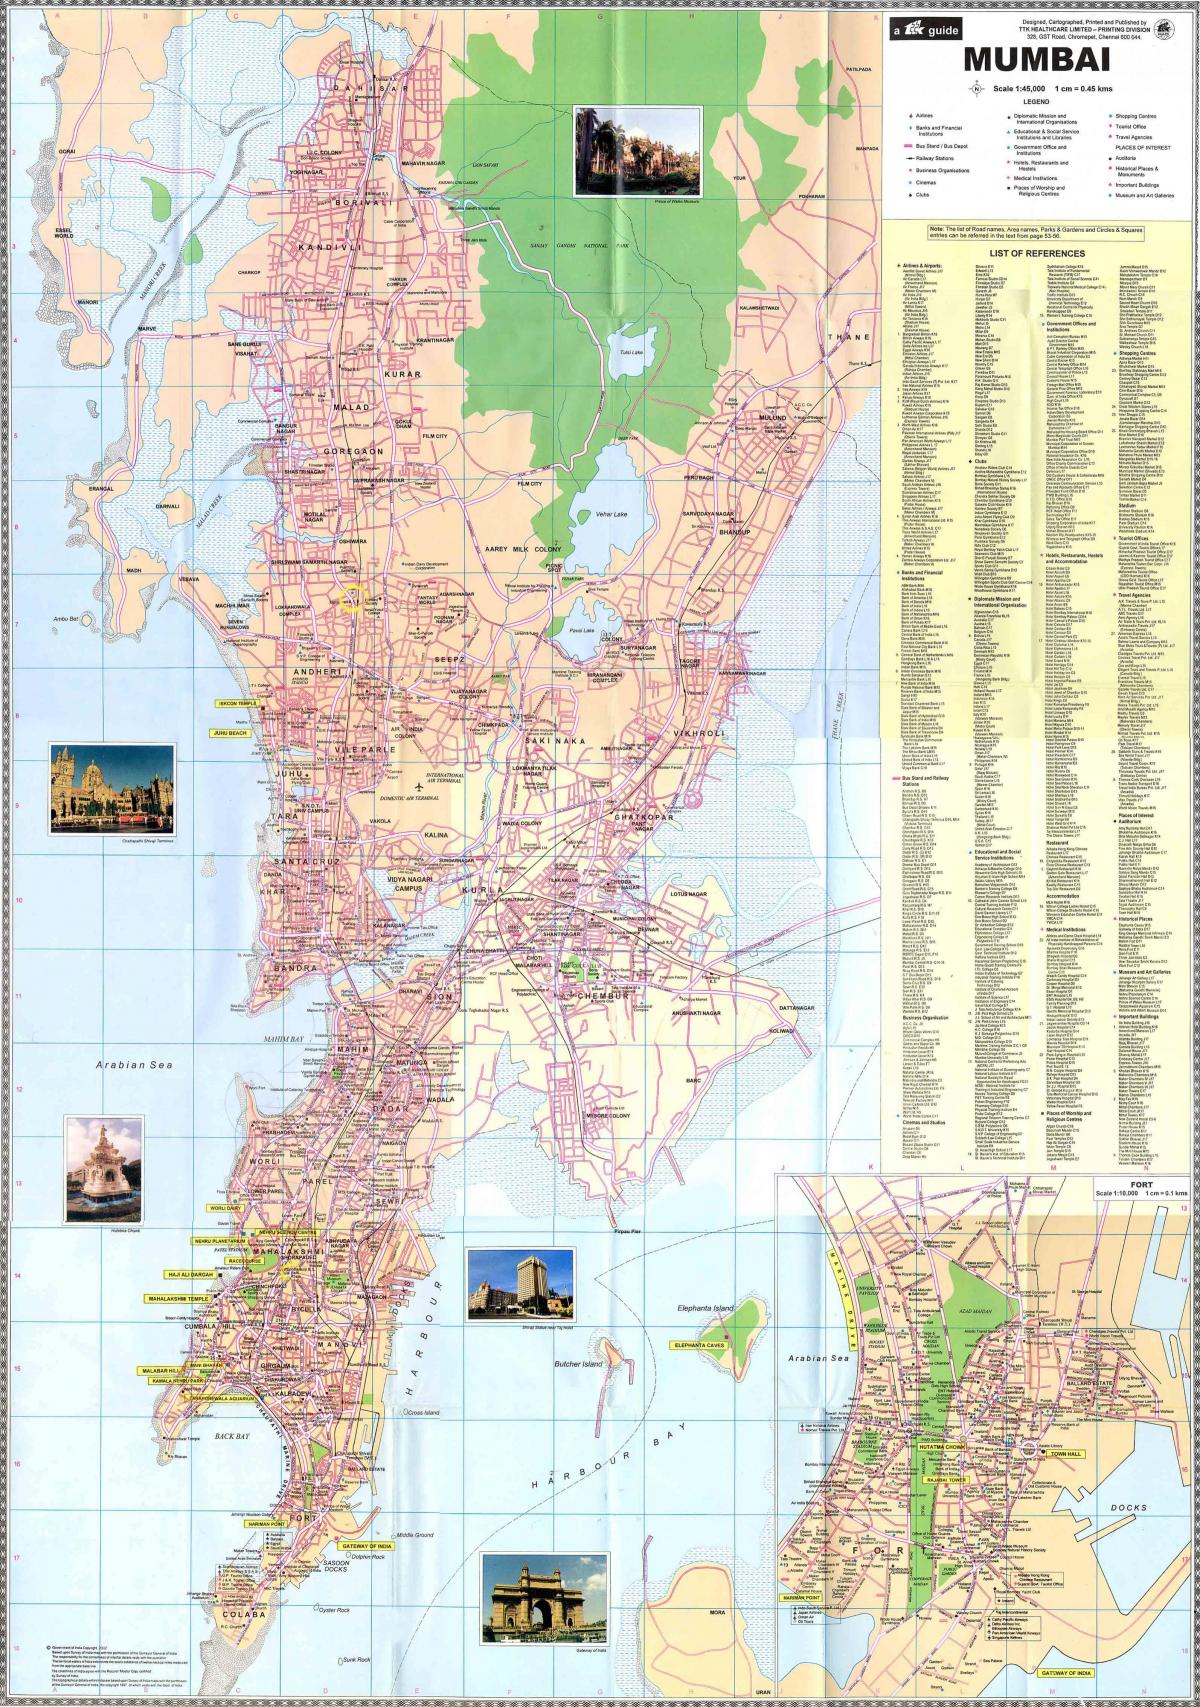 Mumbai - Bombay roads map